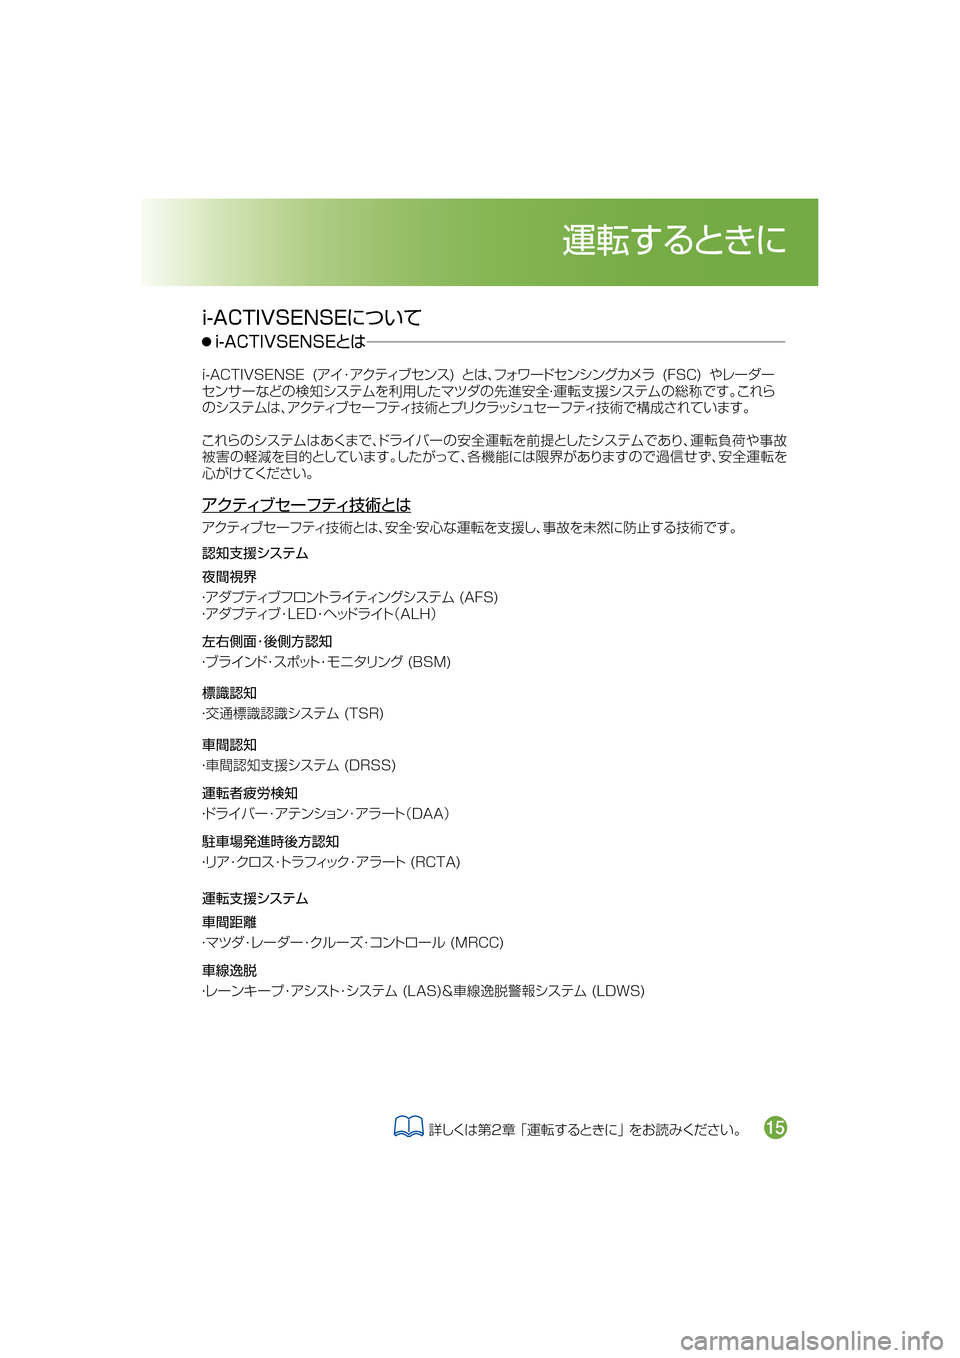 MAZDA MODEL ATENZA 2016  アテンザ｜取扱説明書 (in Japanese) �J��"�$�5�*�7�4�&�/�4�&tmMo
�J��"�$�5�*�7�4�&�/�4�&� �	